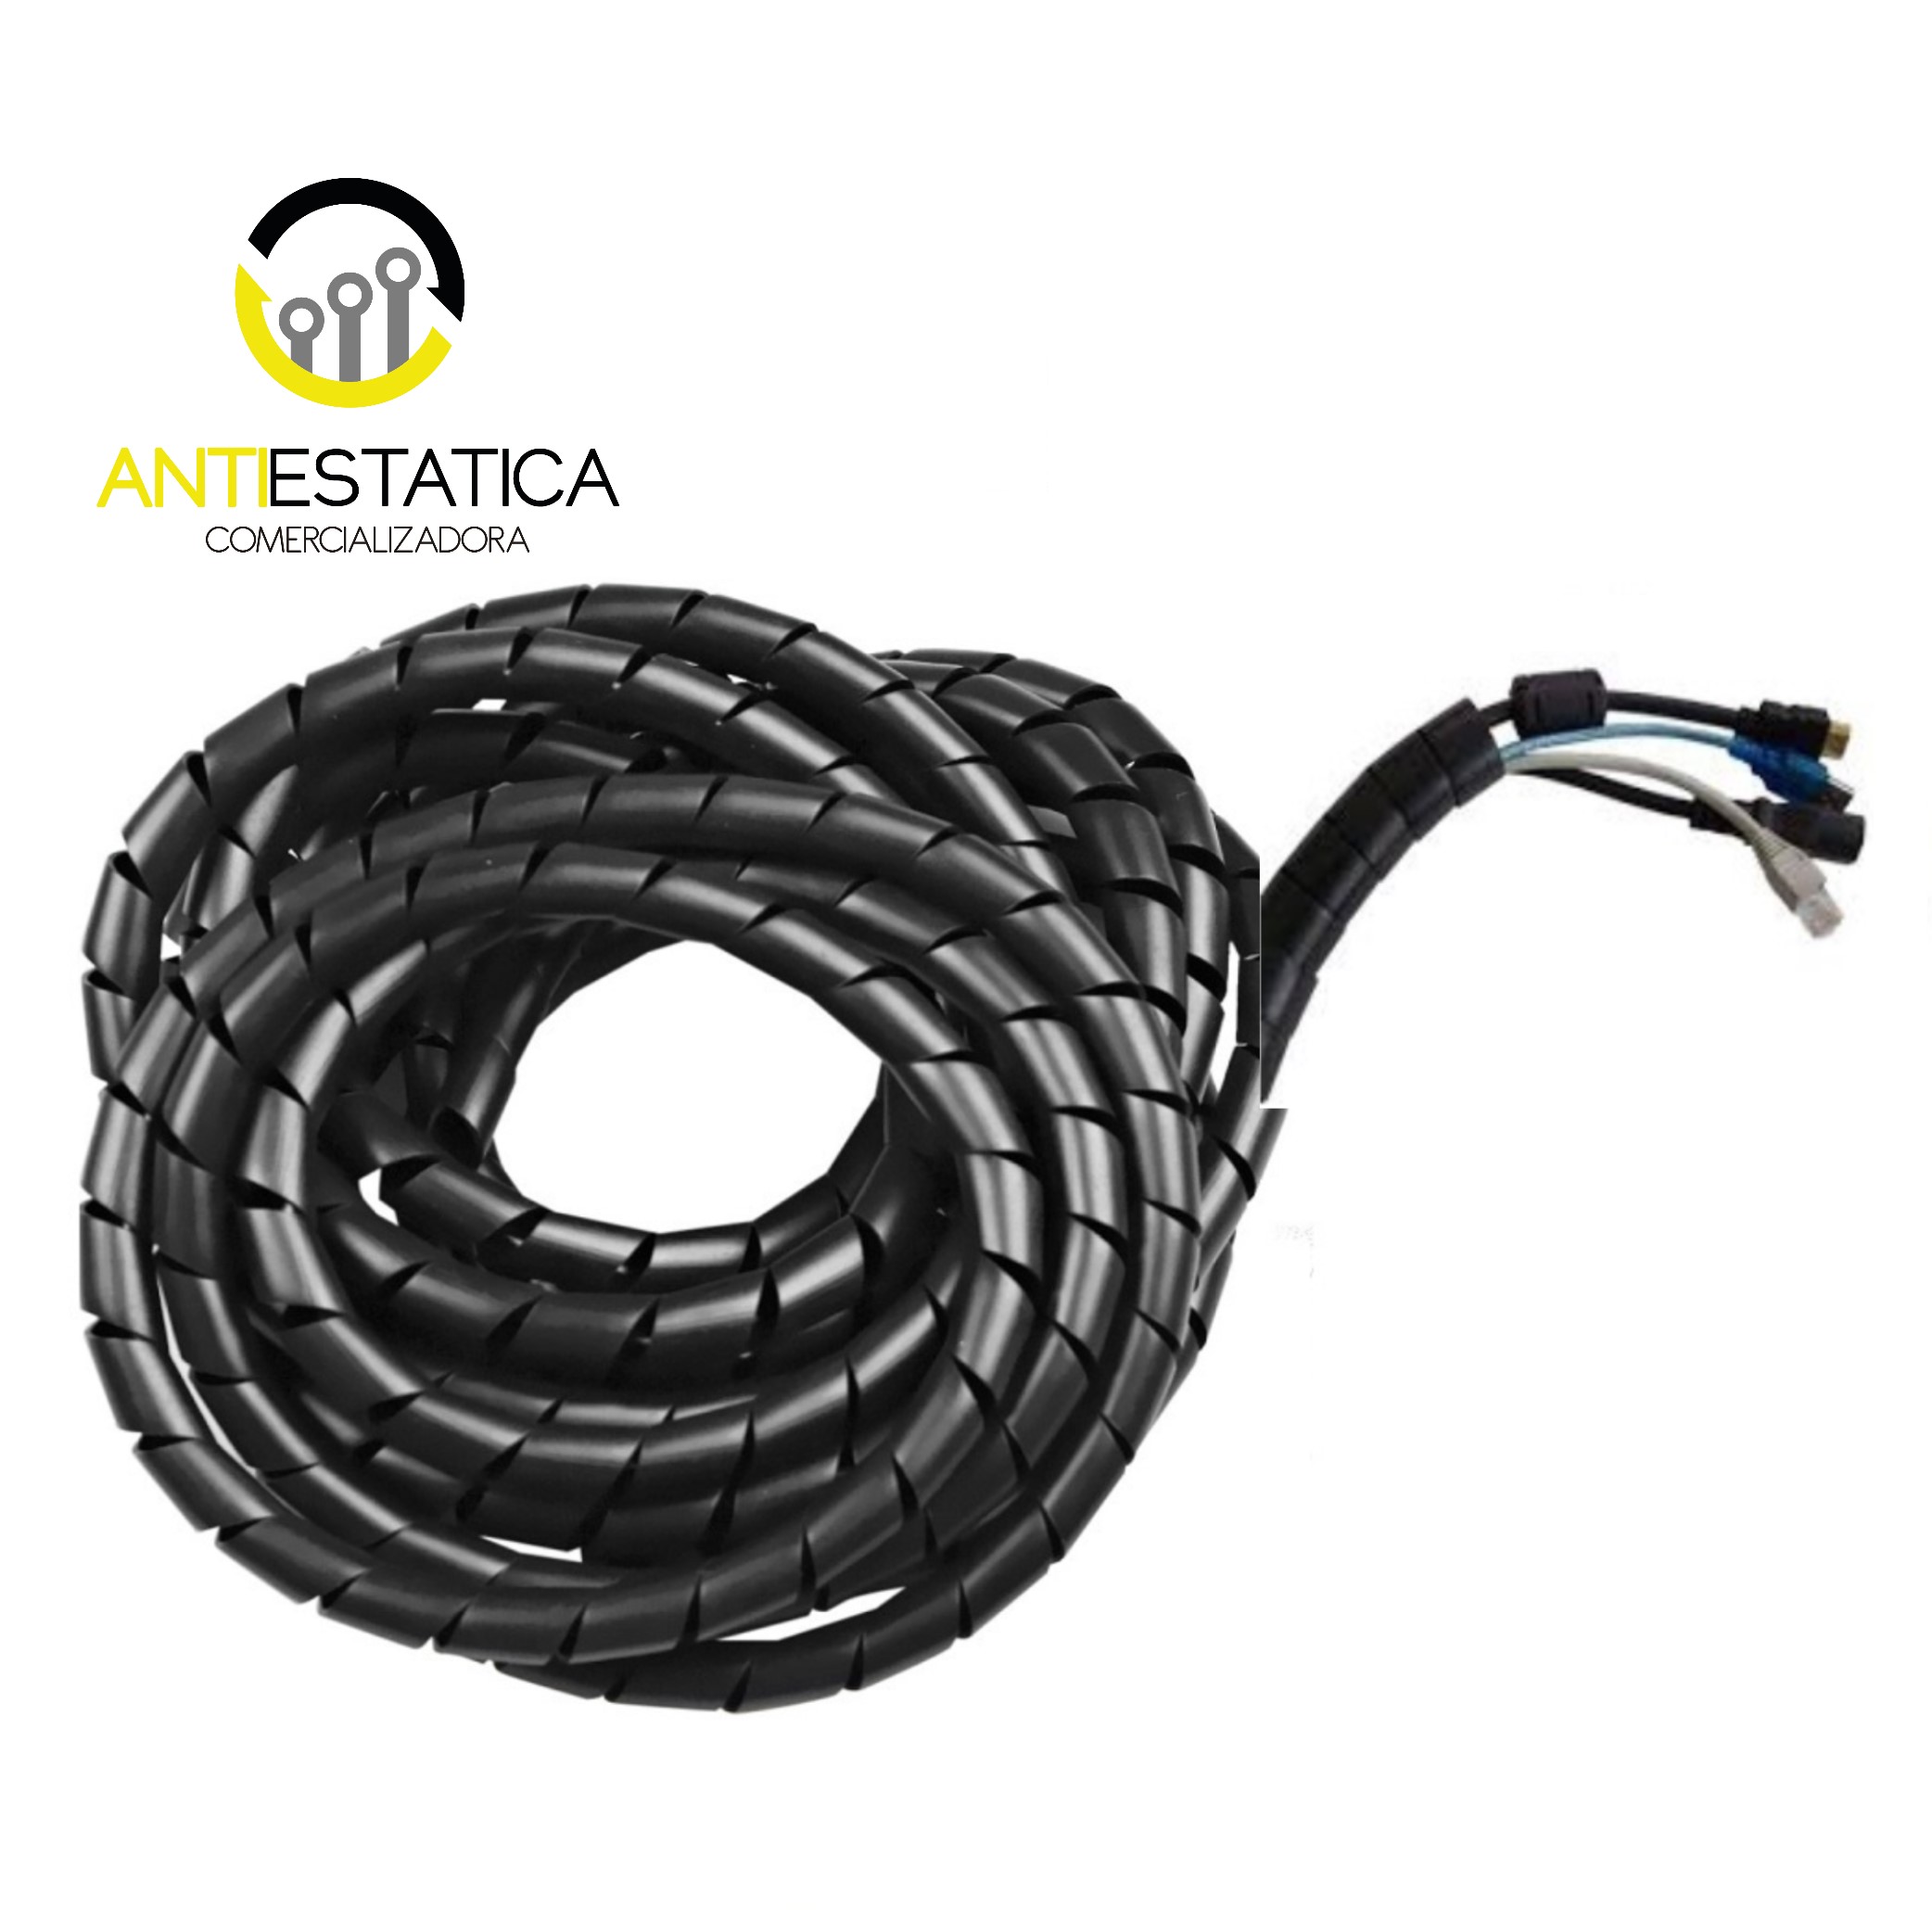 Amarra cables en espiral 8mm (1 metro longitud)(Negro) - Cimech 3d